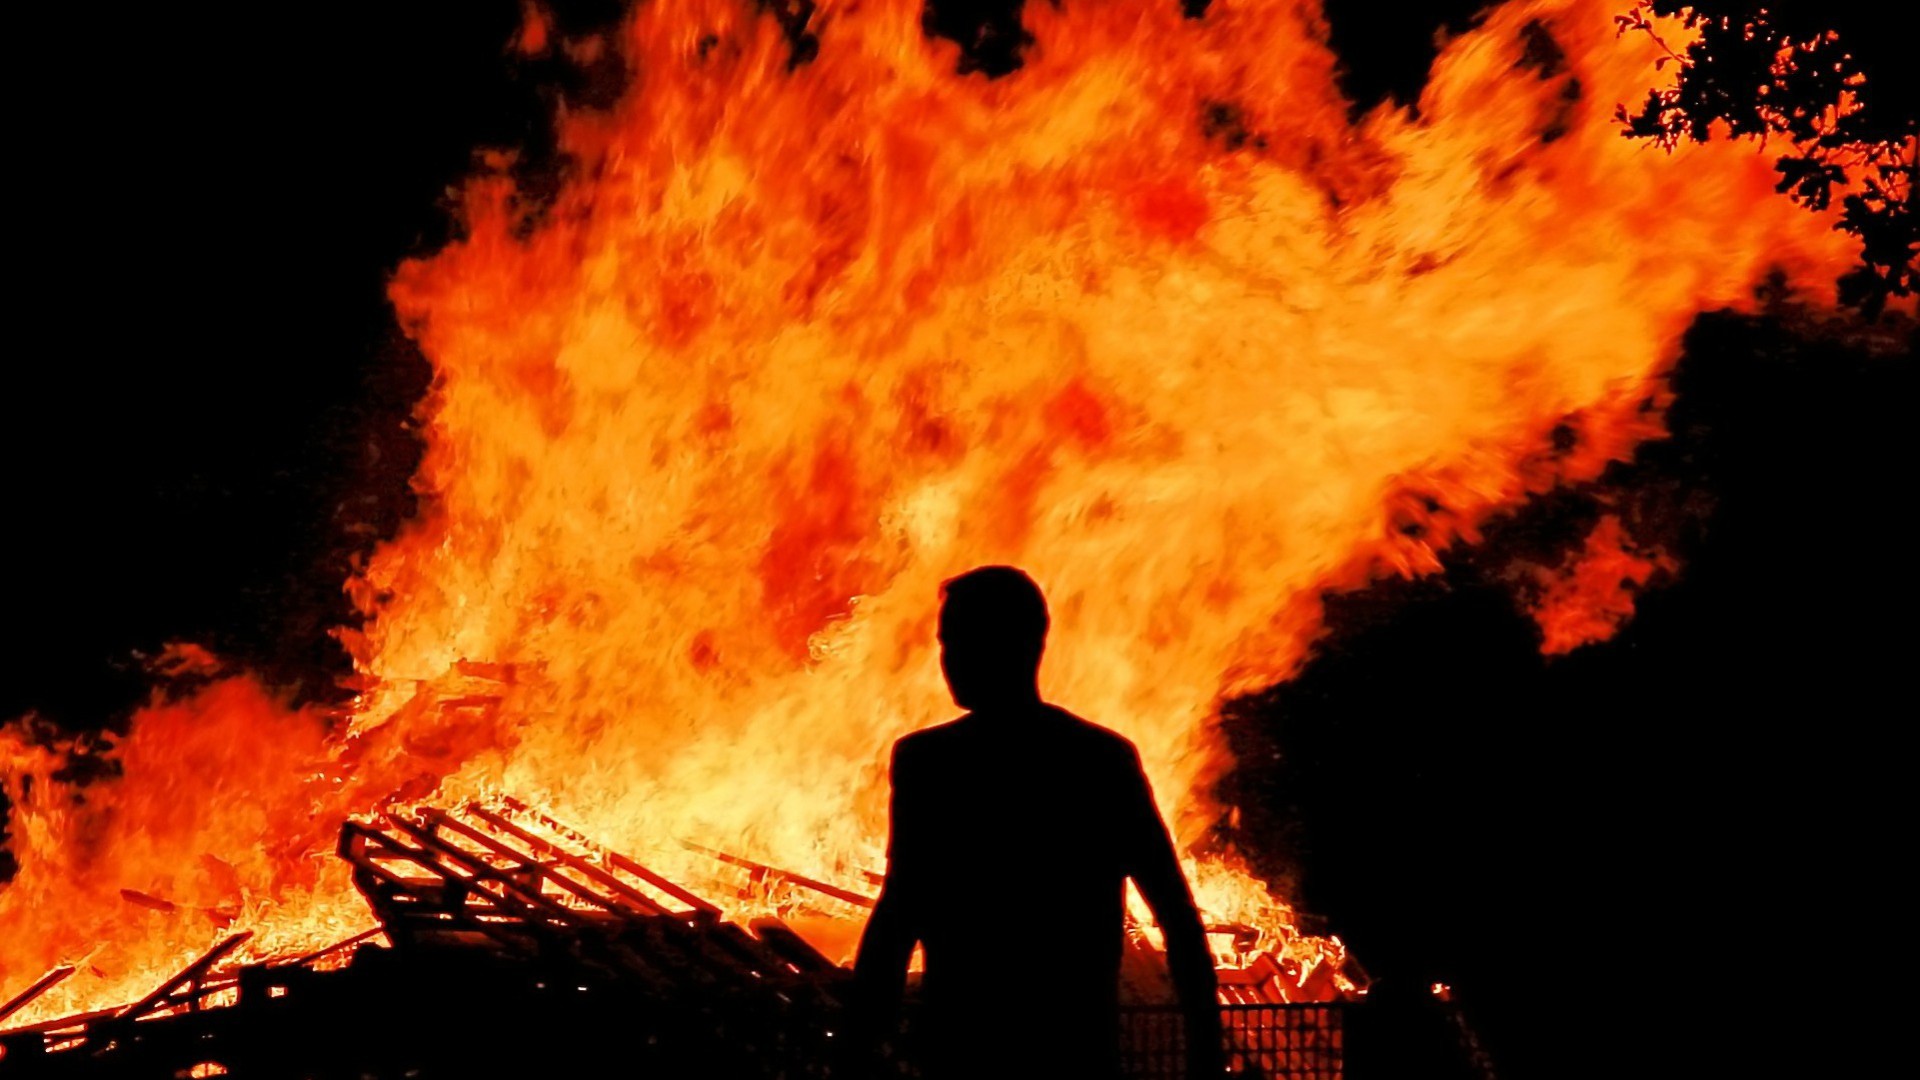 Un incendie a fait 34 morts au Bénin (Photo d'illustration: Paul Chaloner/Flickr/CC BY-ND 2.0)